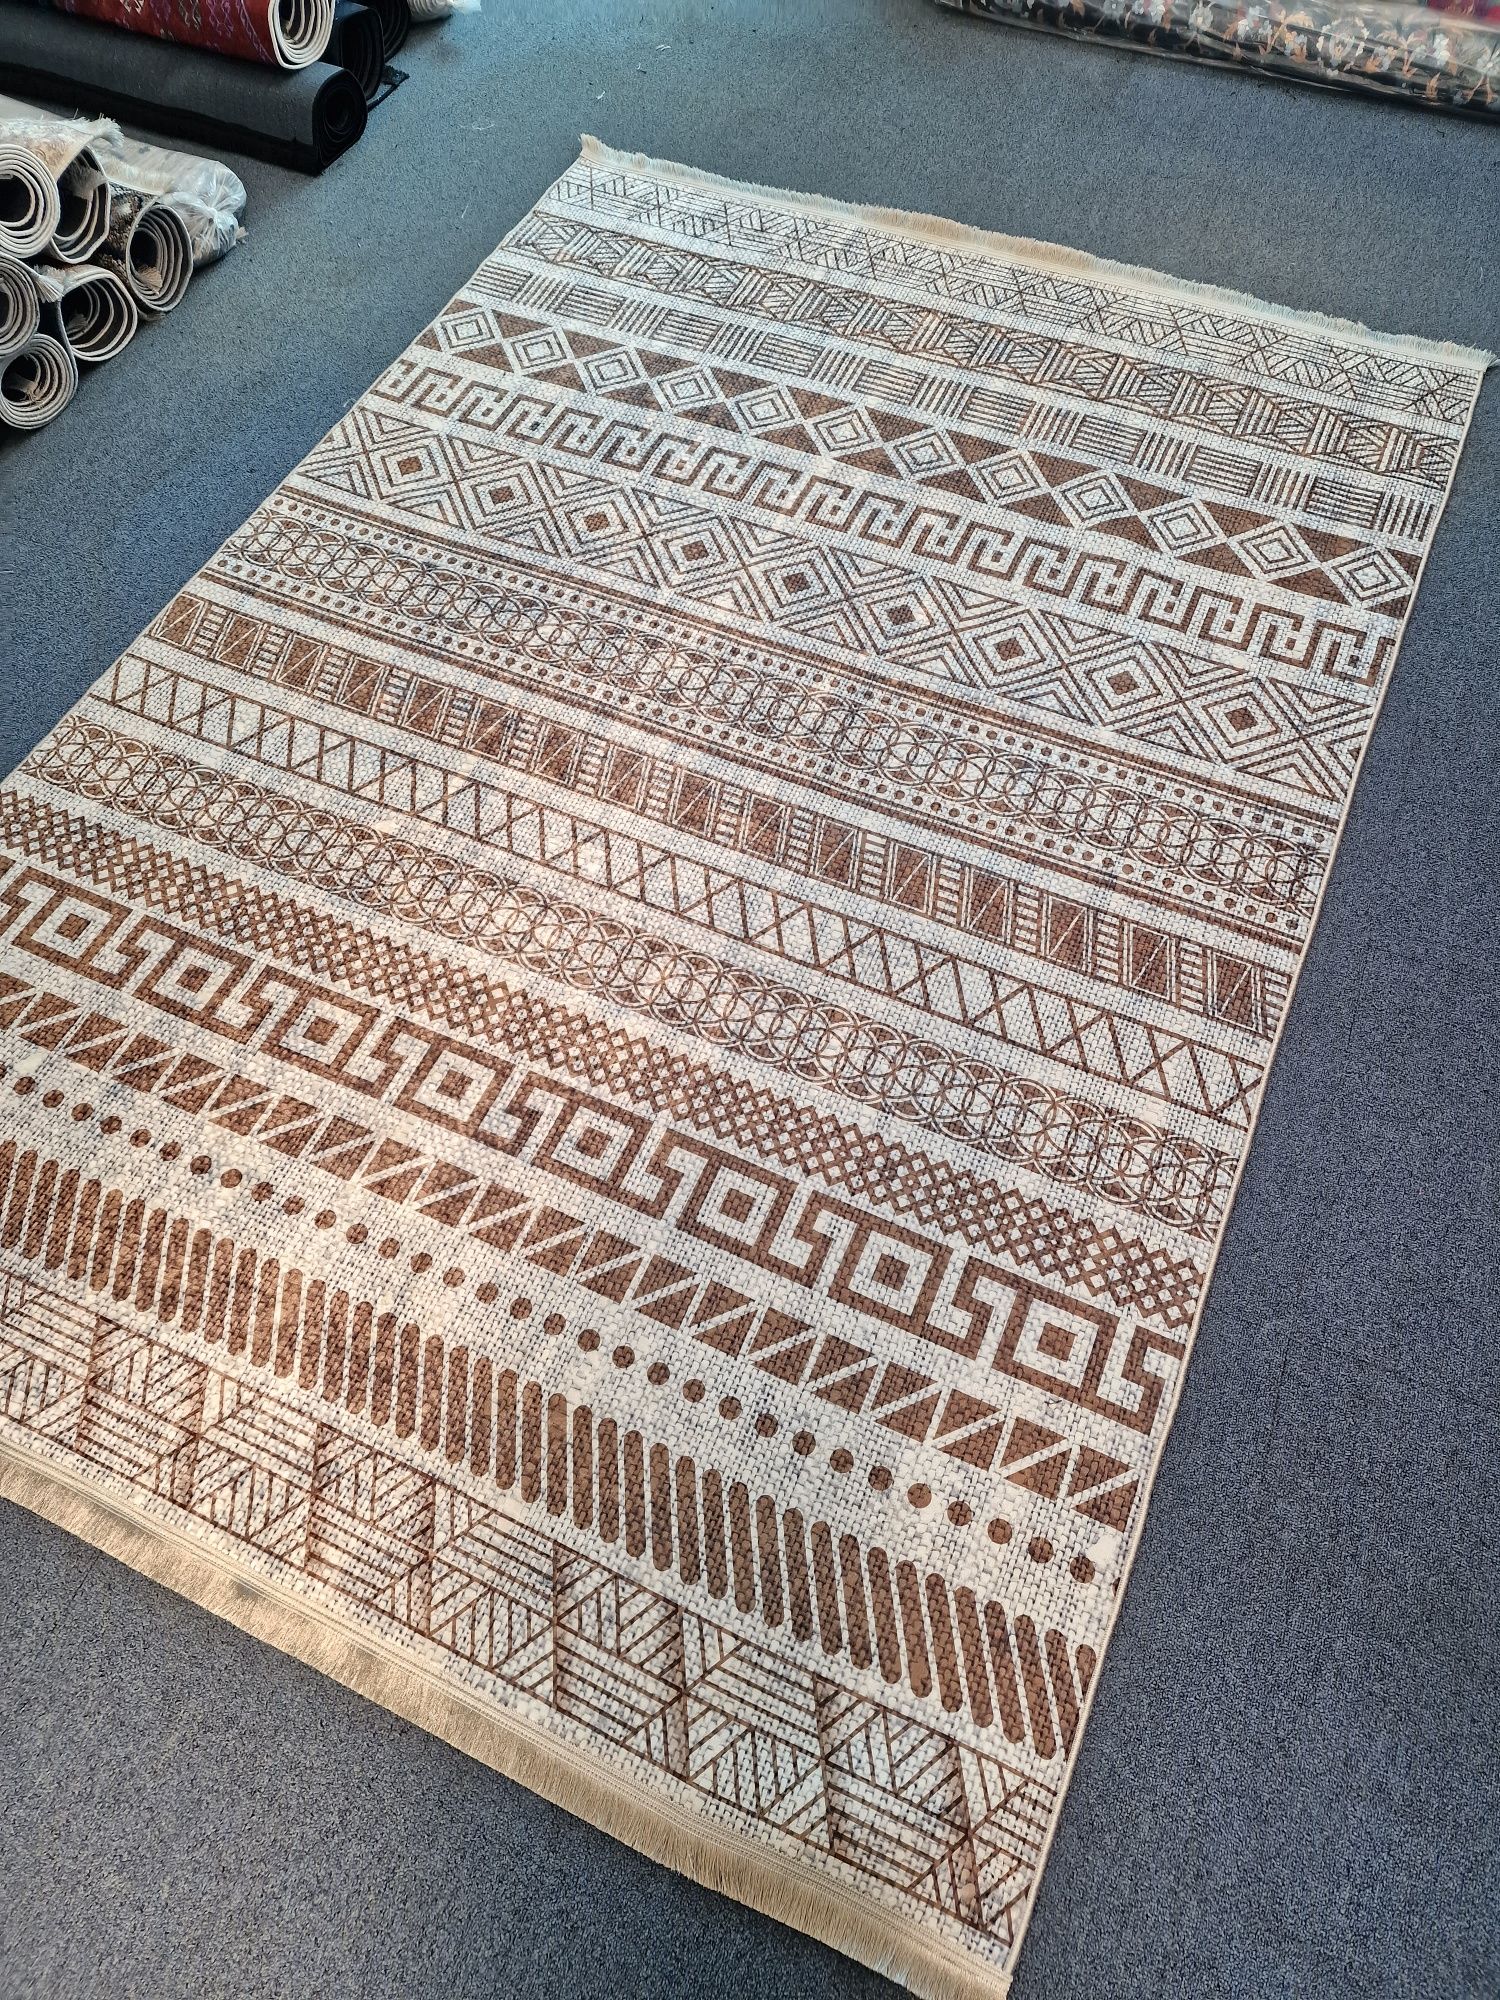 Promocja !!  Ostatnie sztuki Nowe dywany 160x230. Różne modele.